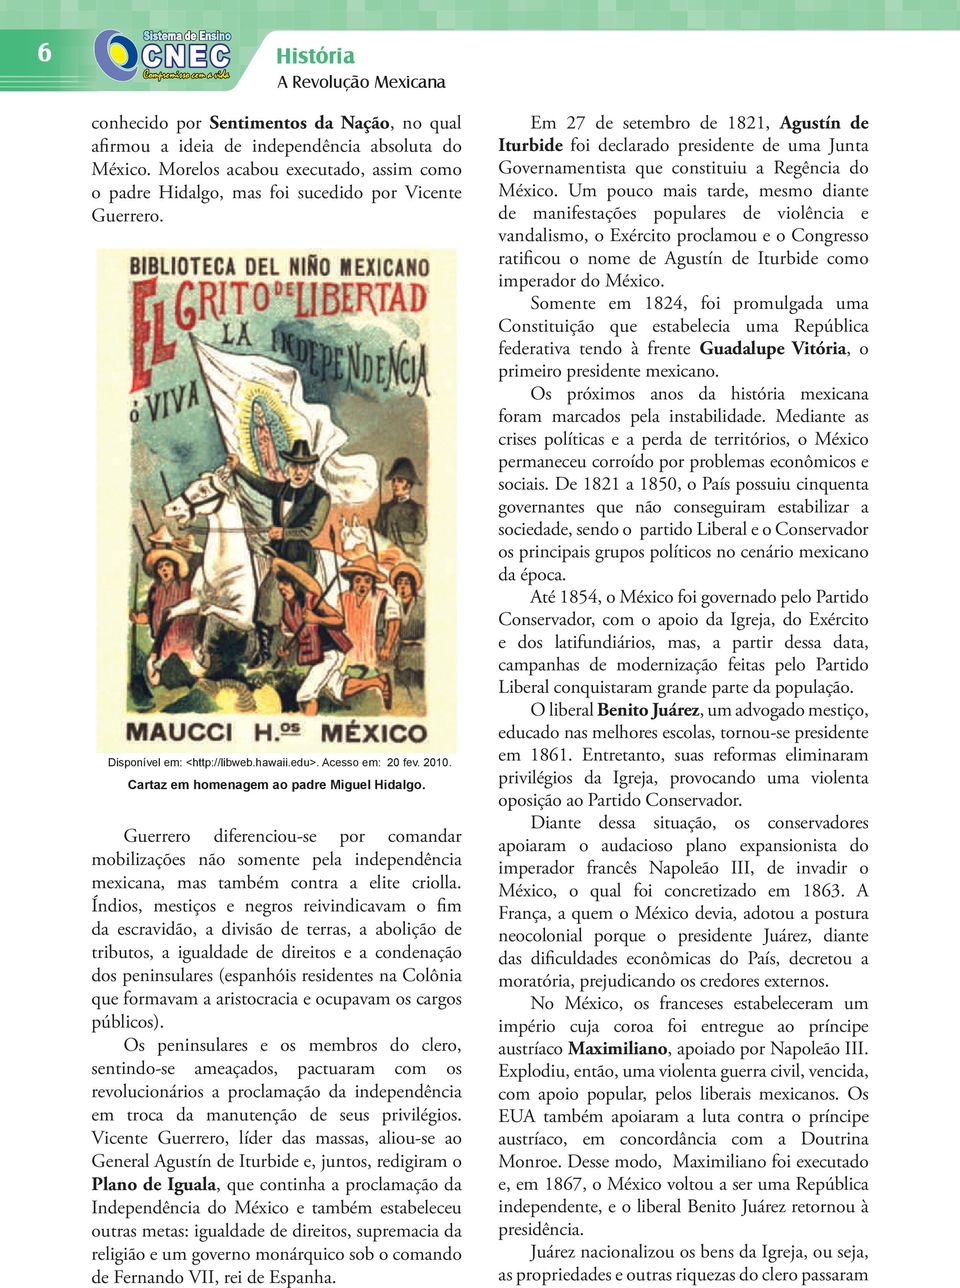 Guerrero diferenciou-se por comandar mobilizações não somente pela independência mexicana, mas também contra a elite criolla.